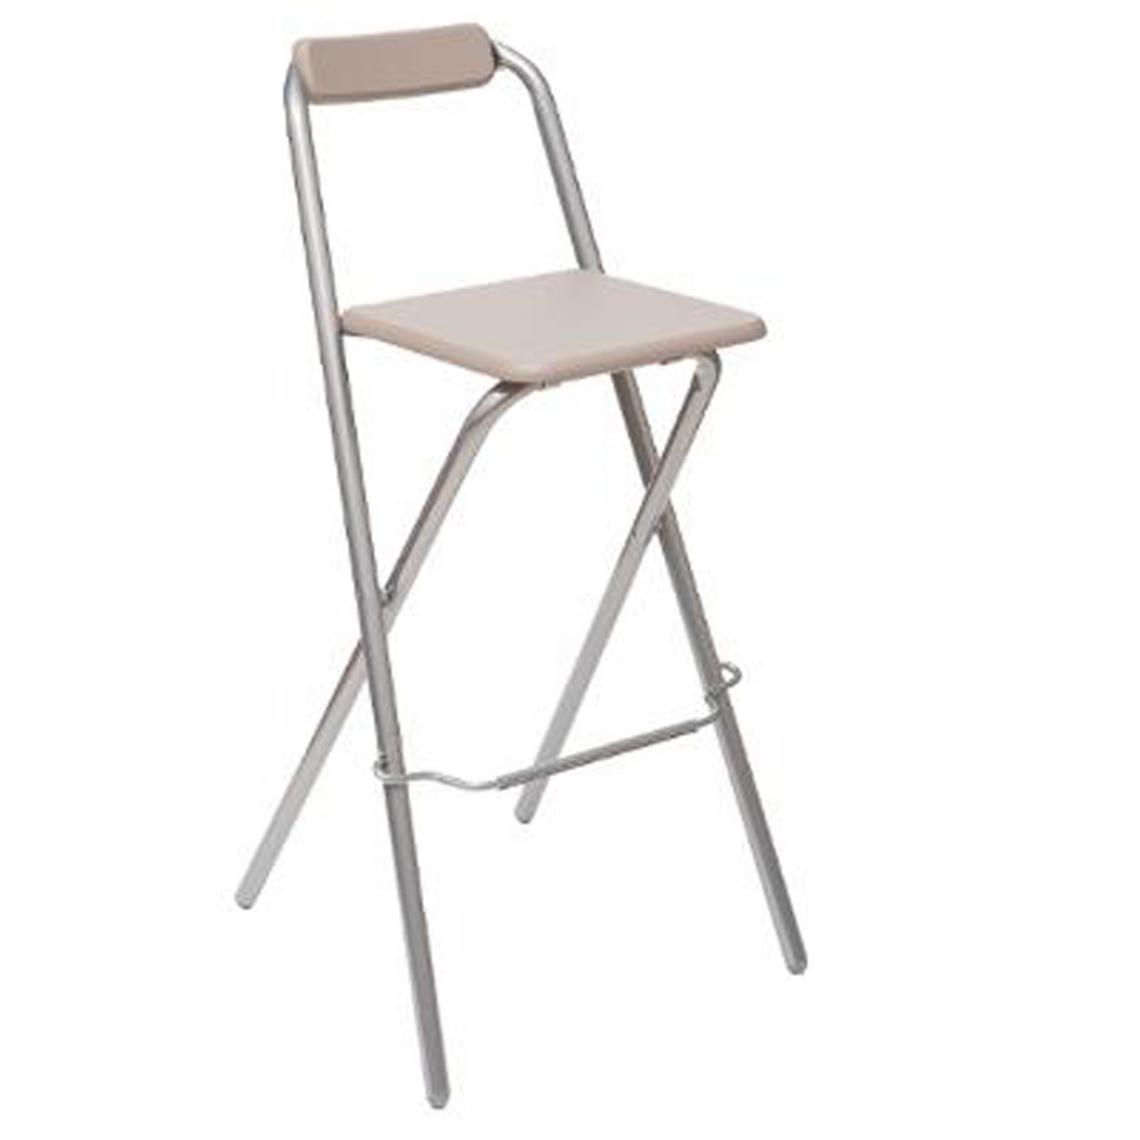 Pegane - Lot de 4 chaises de bar en métal coloris taupe - L. 50 x l. 51 x H. 97 cm -PEGANE- - Chaises